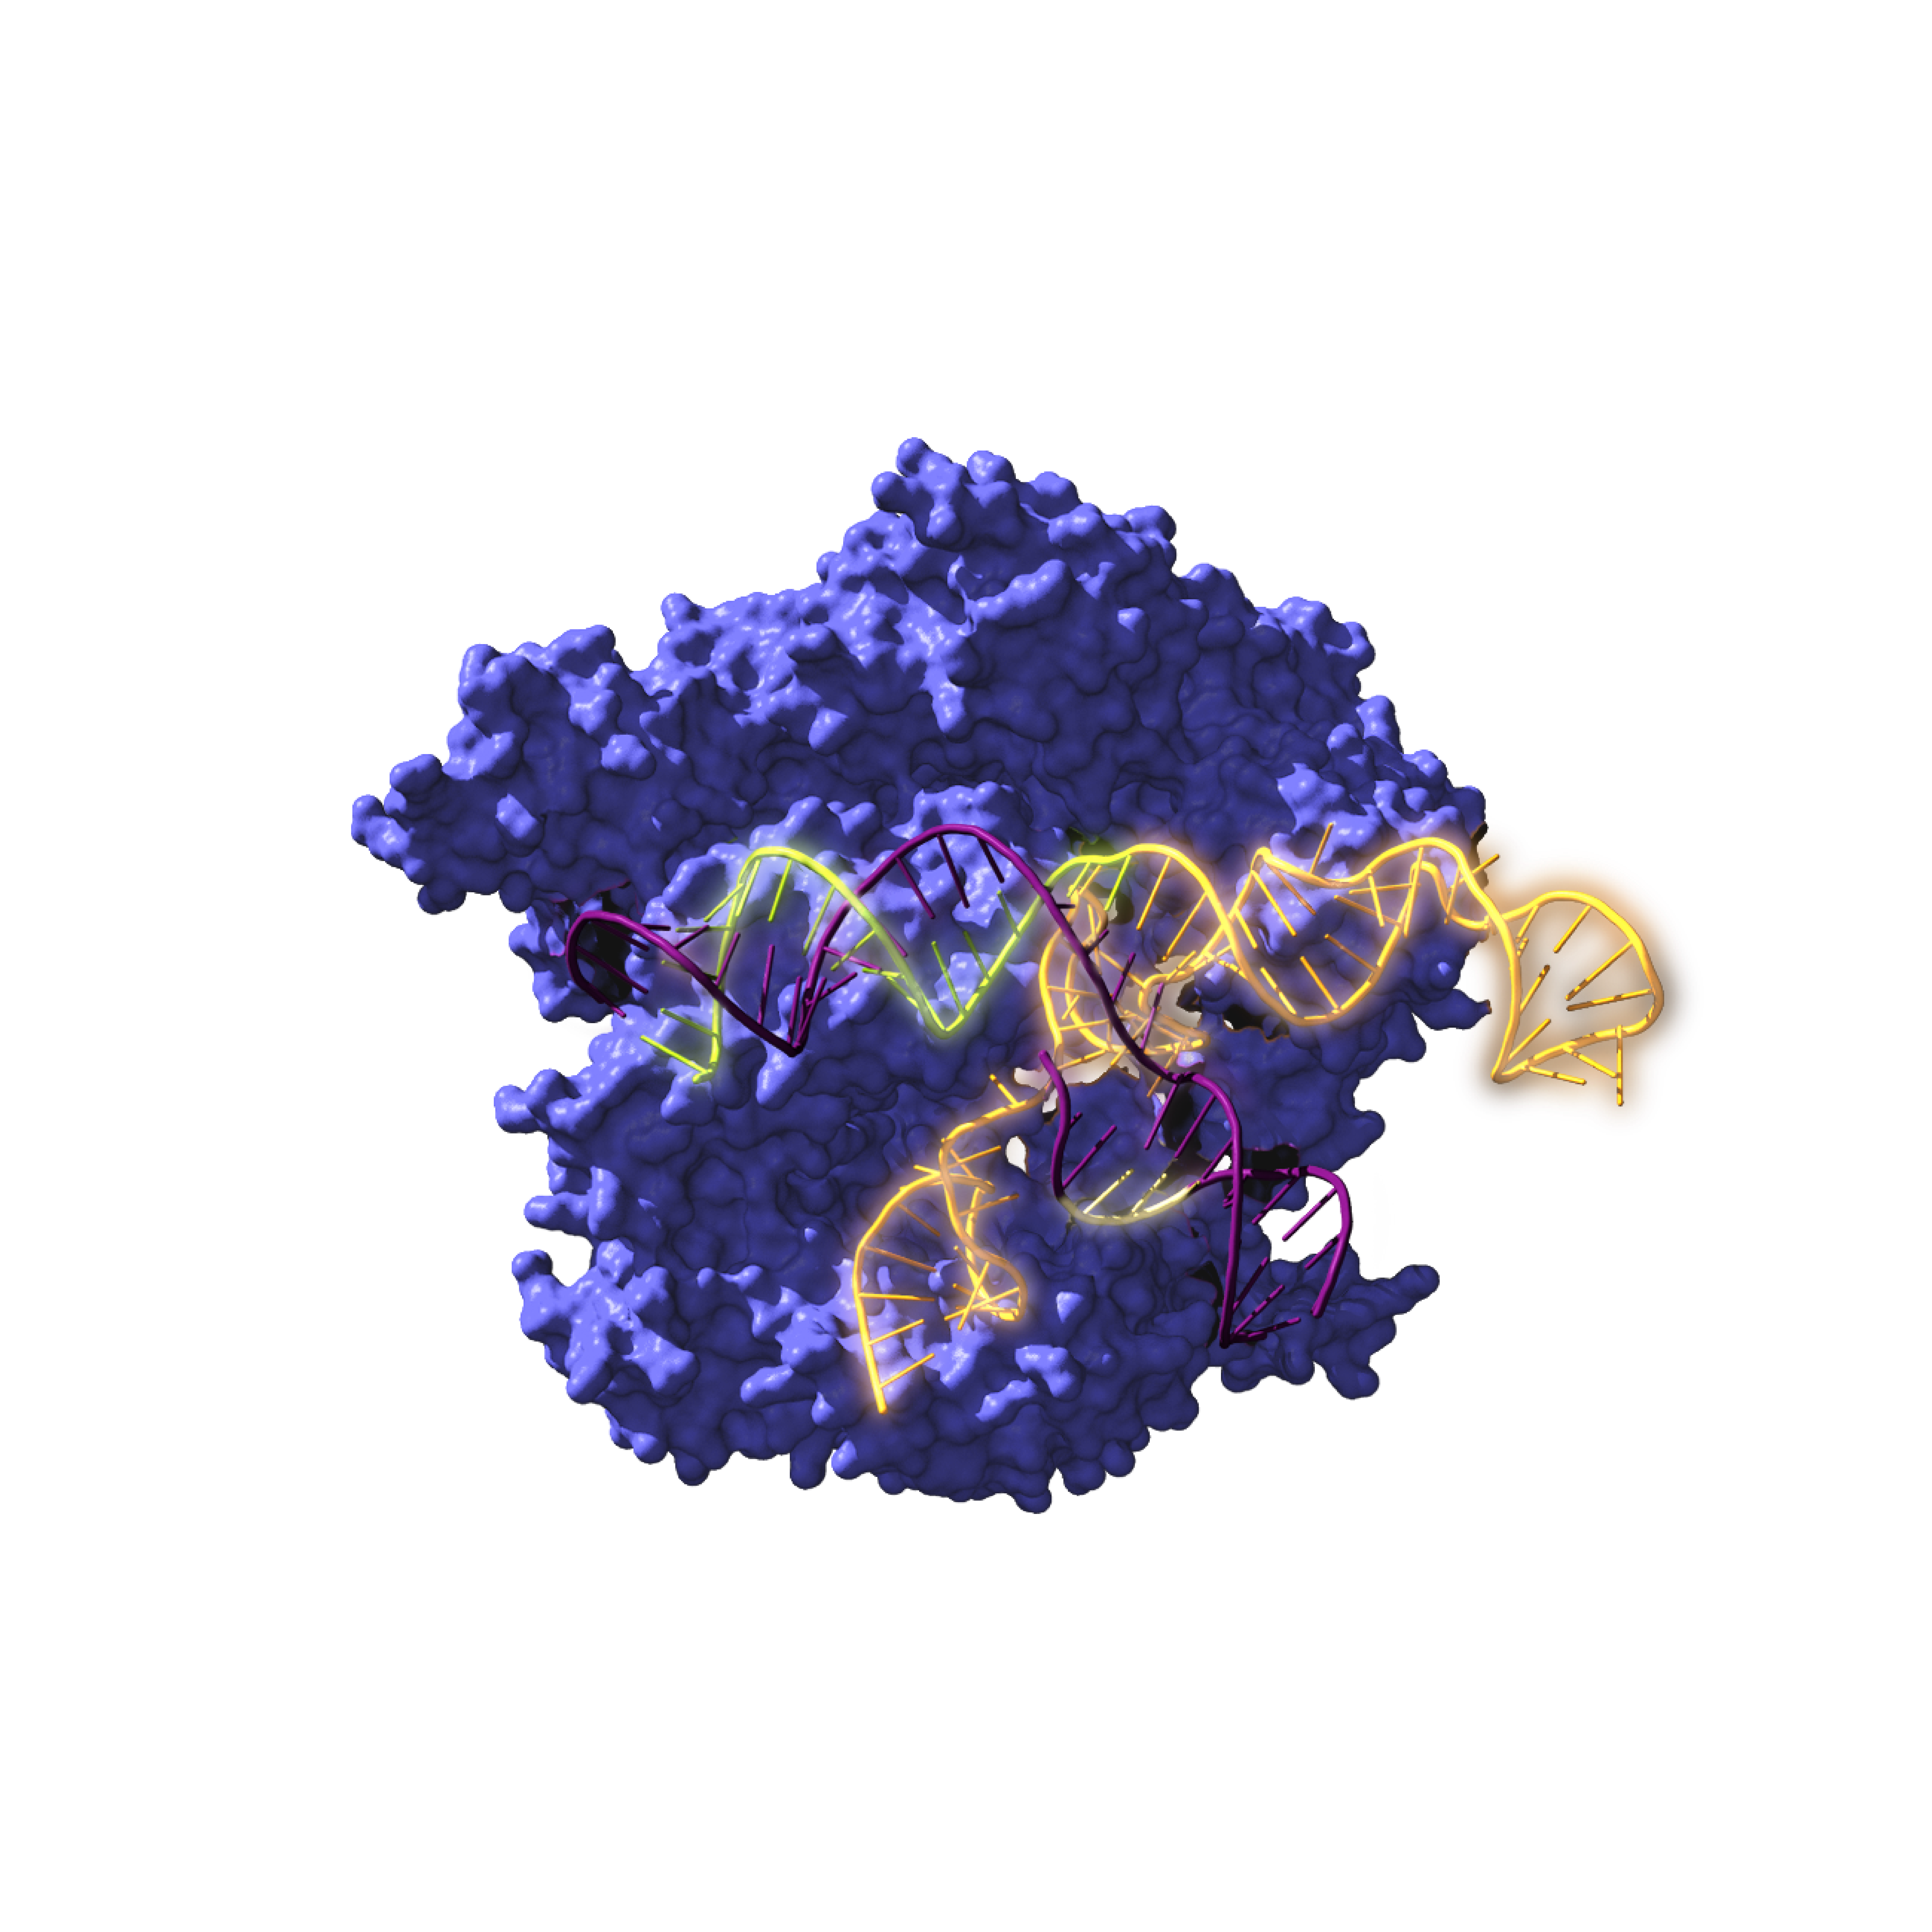 Imagen de Cas9, una enzima endonucleasa asociada con el sistema CRISPR, actuando sobre el ADN objetivo. / Antonio Reifs (CIC nanoGUNE)